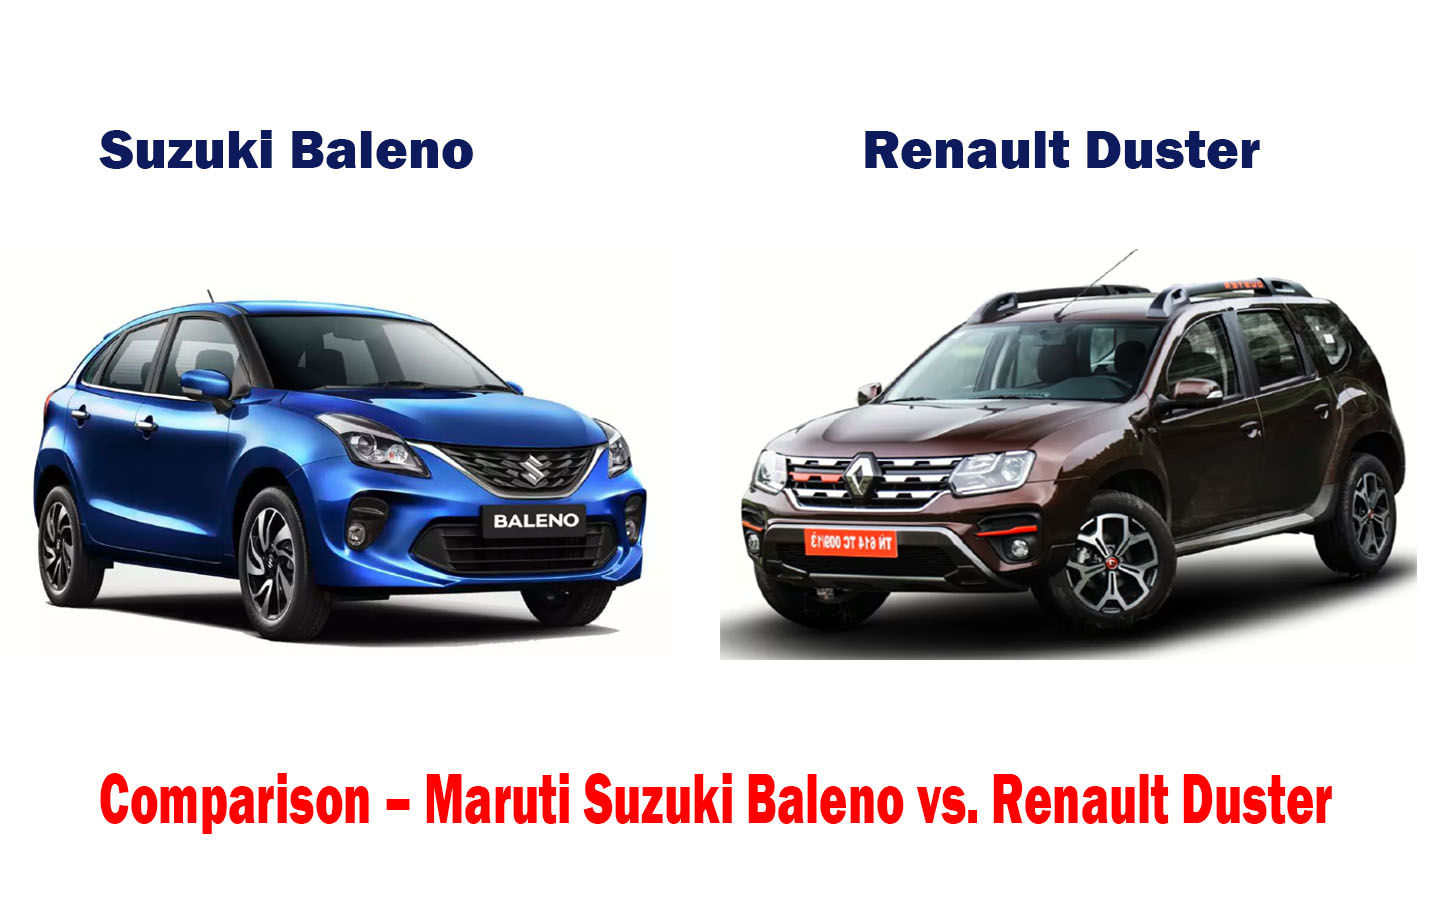 Comparison – Maruti Suzuki Baleno vs. Renault Duster